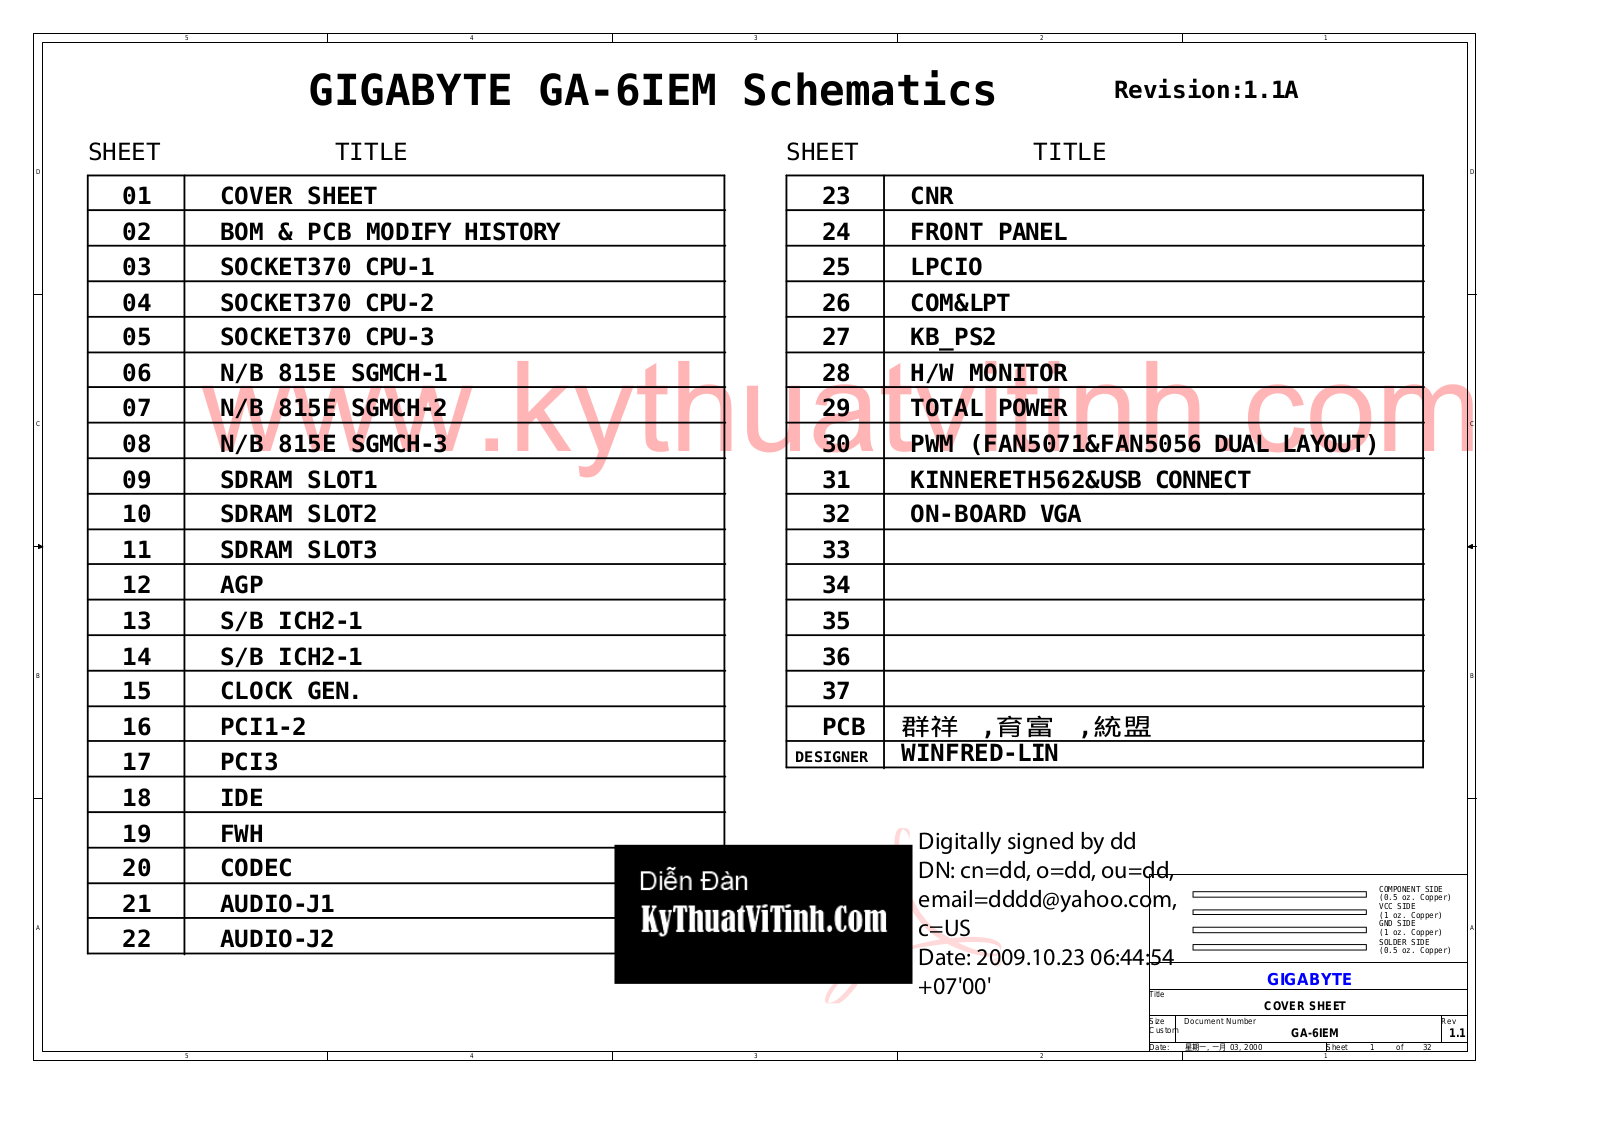 GIGABYTE GA-6IEM Schematics